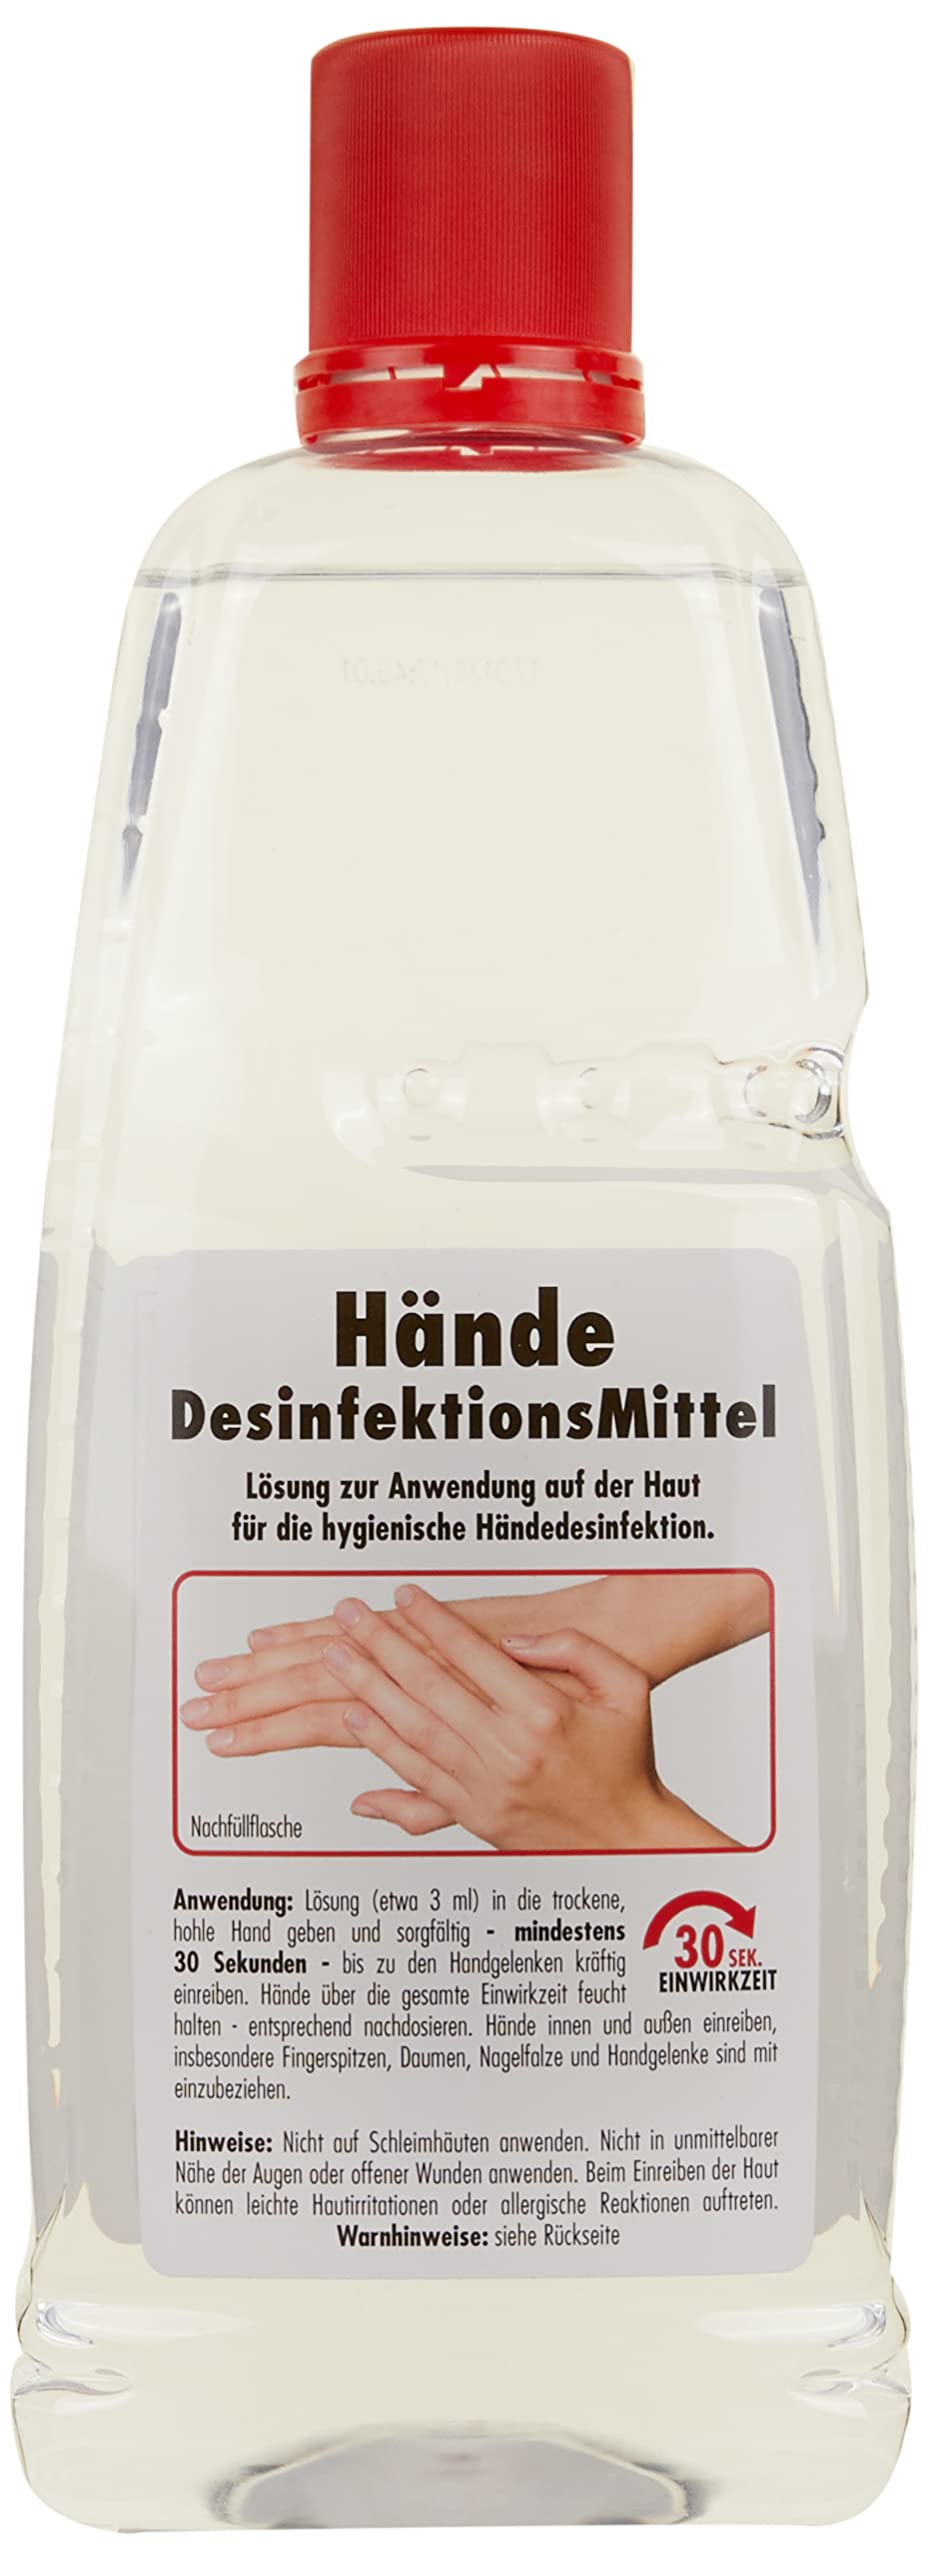 SONAX Handdesinfektionsmittel (1 Liter) schützt gegen Bakterien & Viren für hygienische & wirksame Händedesinfektion - Made in Germany | Art-Nr. 04013000 von SONAX